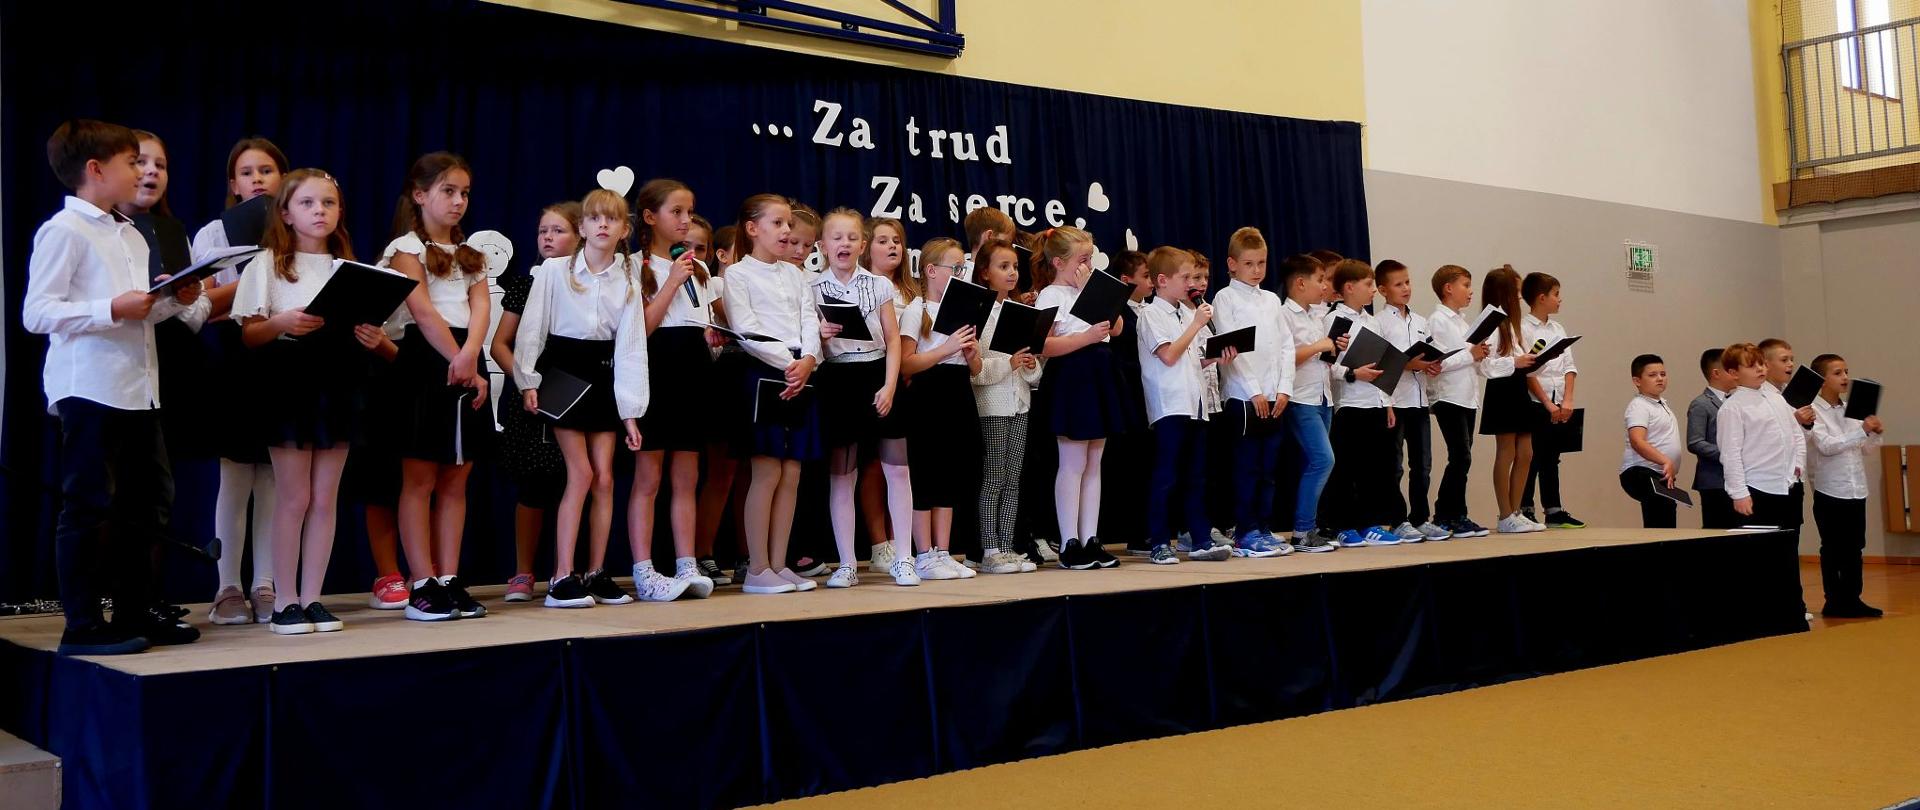 Trzecioklasiści na scenie śpiewają piosenkę dla nauczycieli i pracowników szkoły.